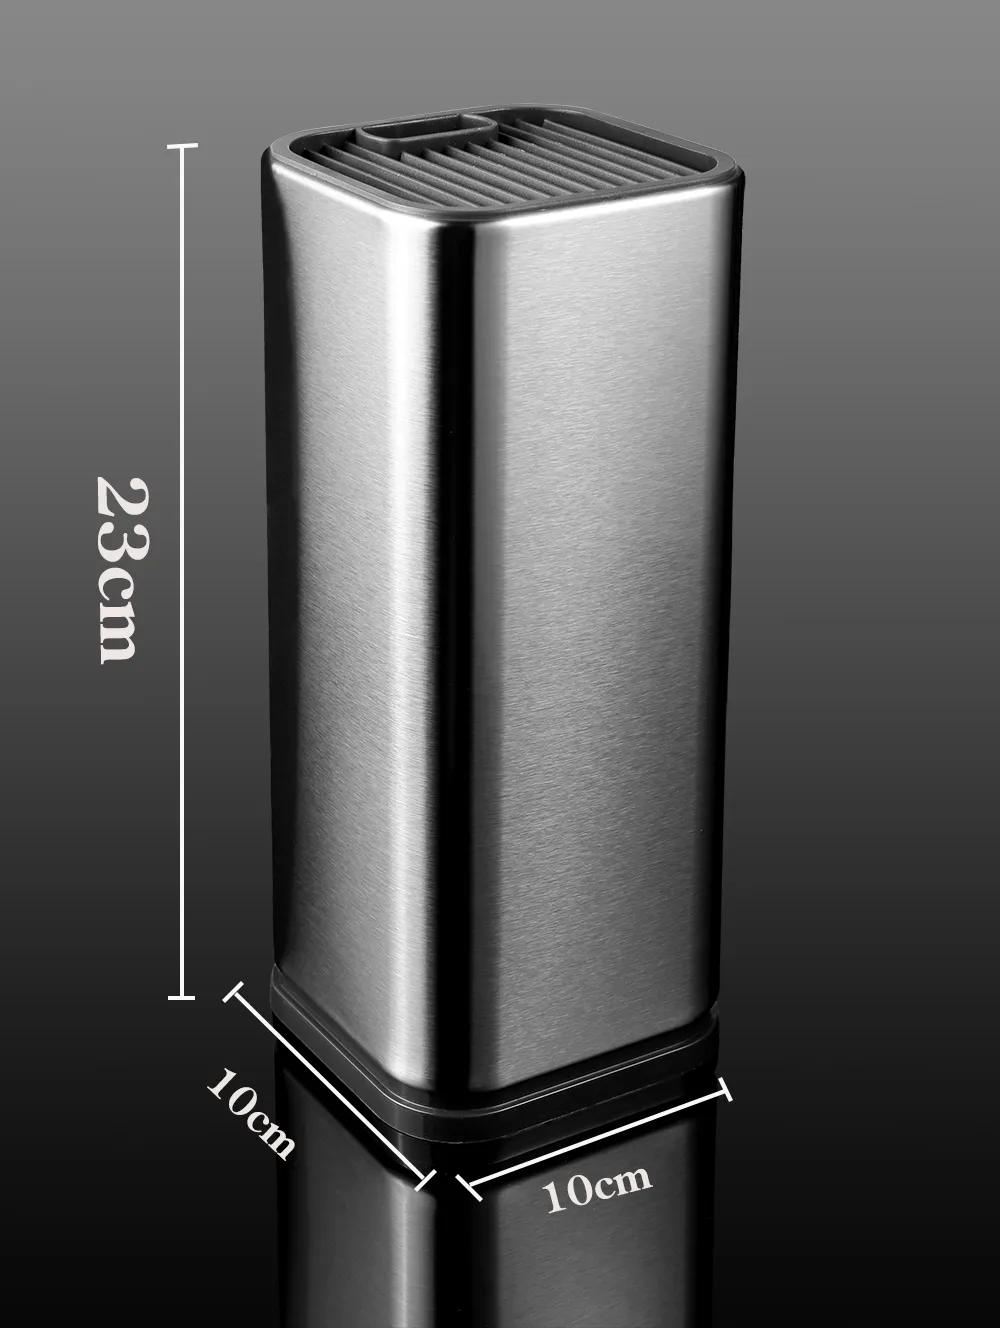 XITUO Aracı Tutucu Bıçak Mutfak Tutucu Blok Çelik Standı Sooktops Tüp Raf Çok Fonksiyonlu Bar Açık BARBEKÜ Bıçak Setleri Yeni Sıcak